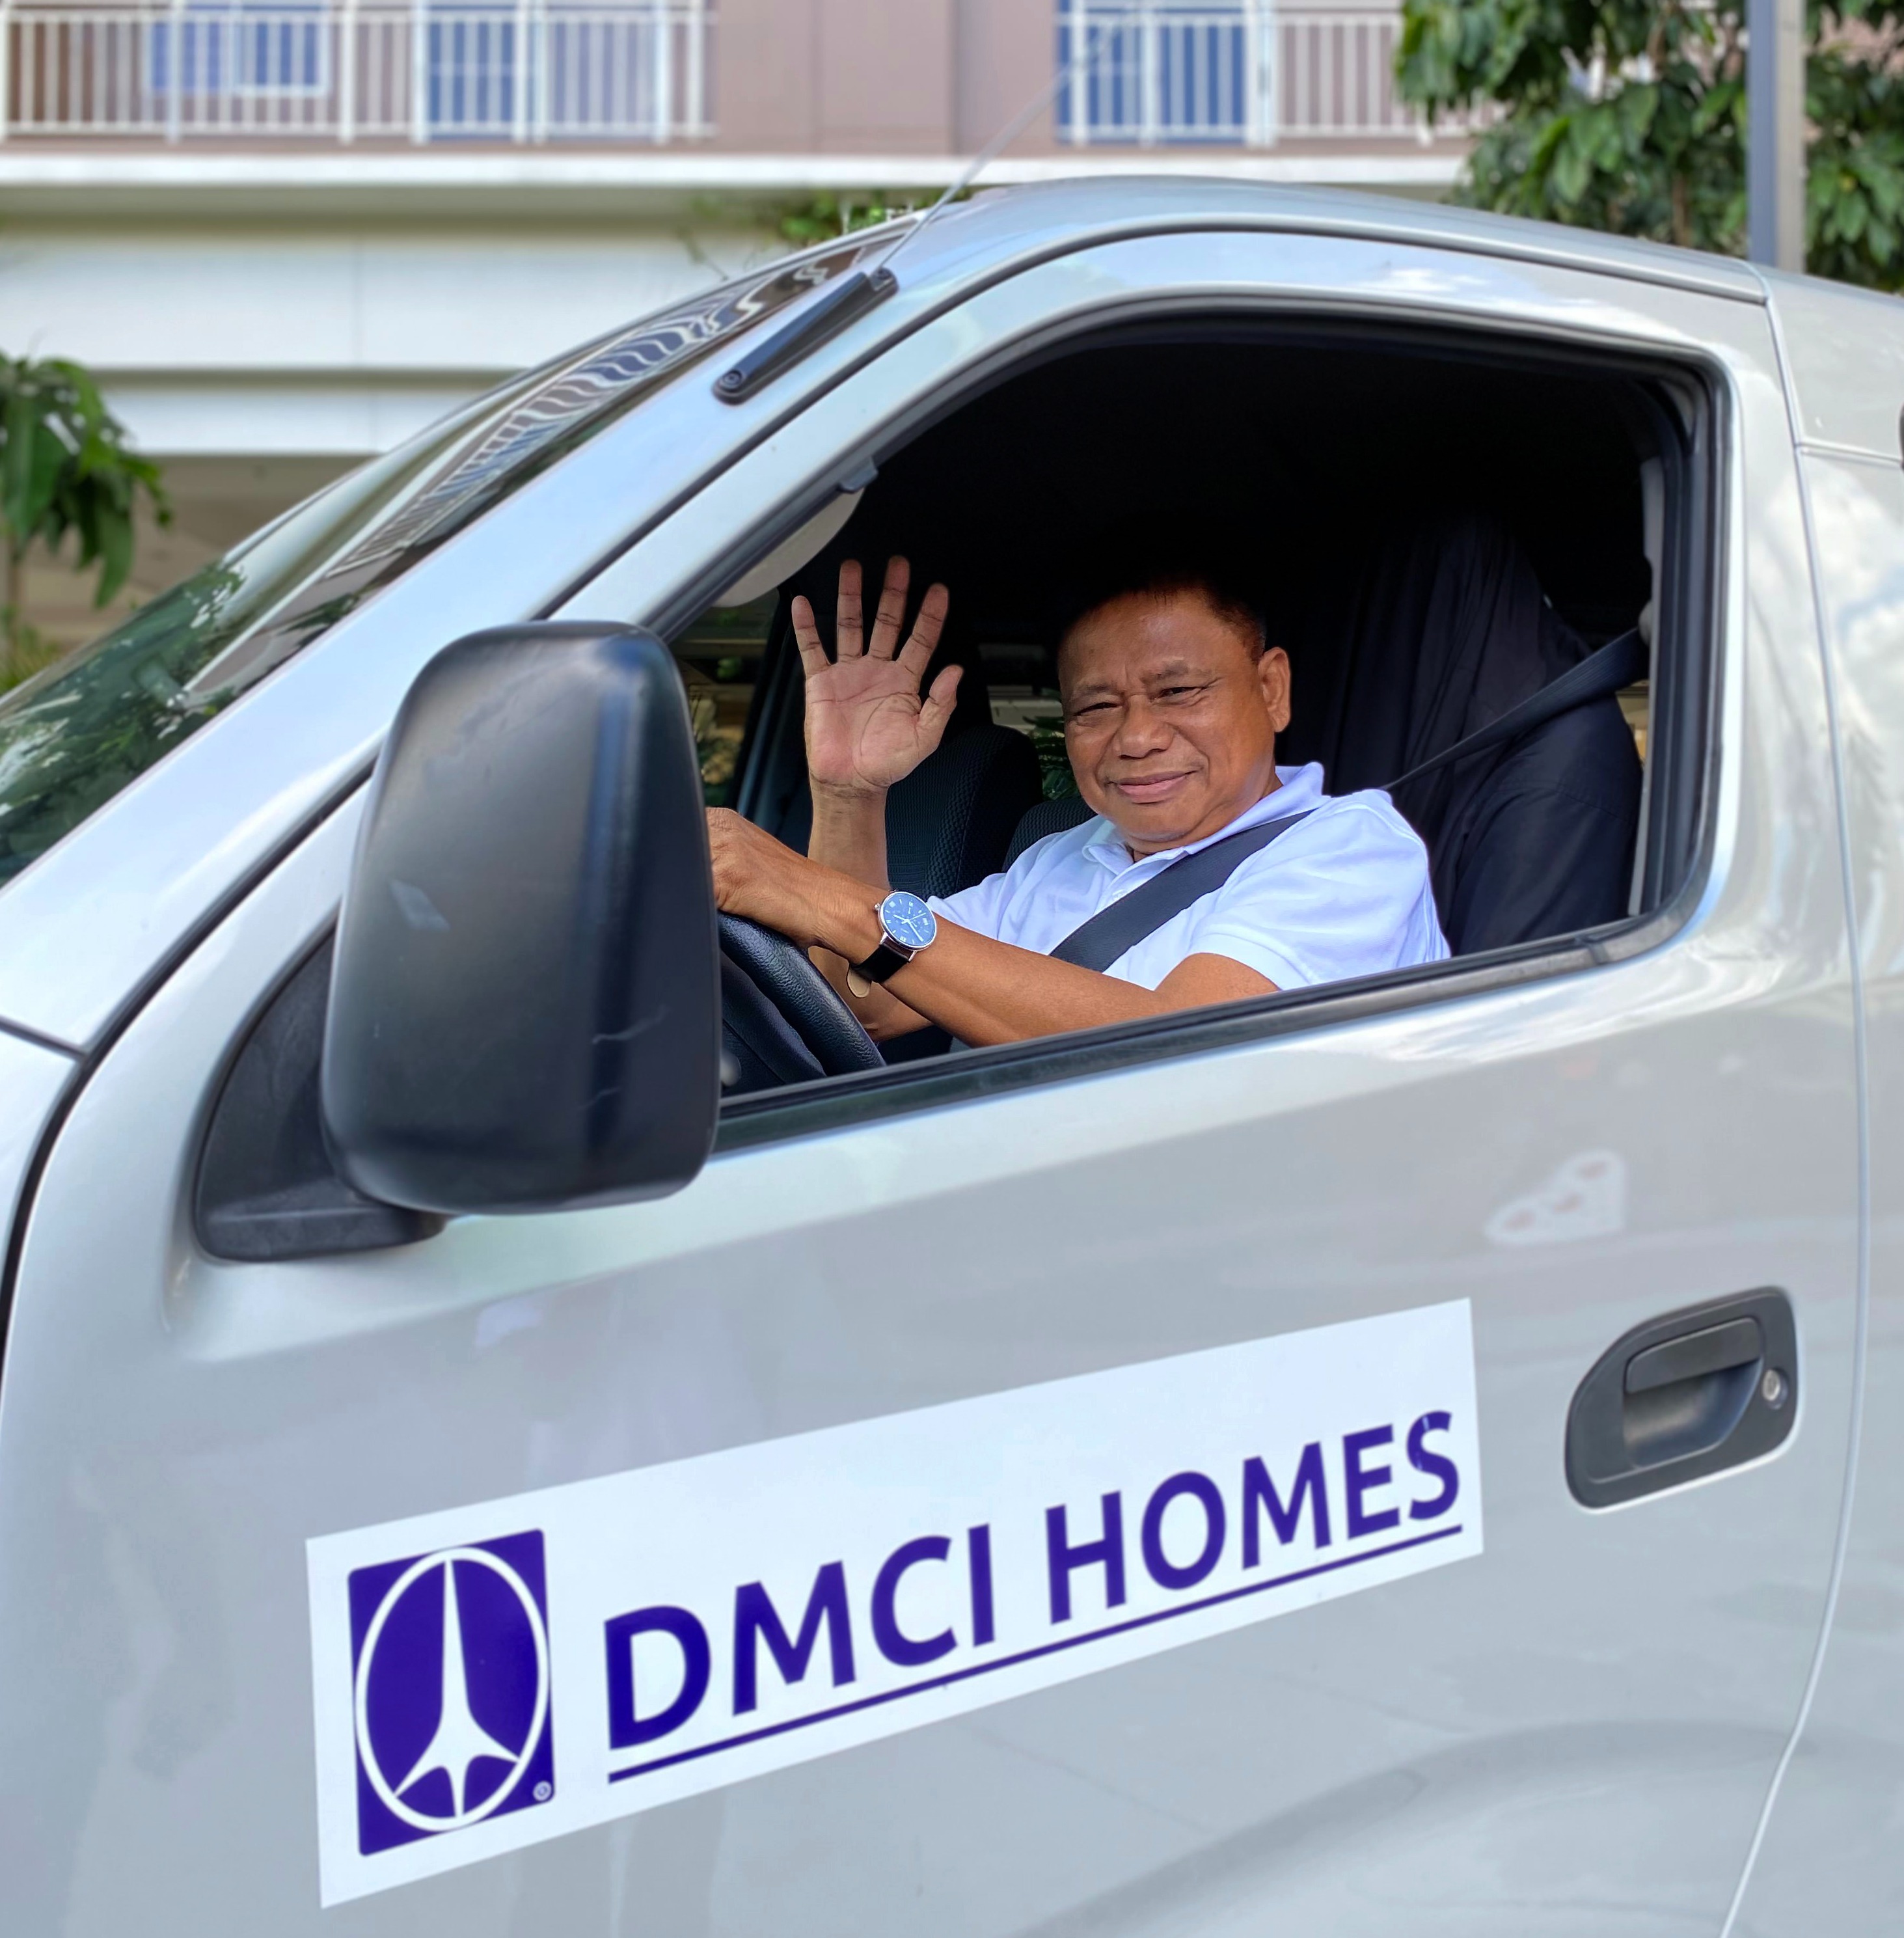 dmci-homes-expands-rideshare-carpool-program-1681380508093